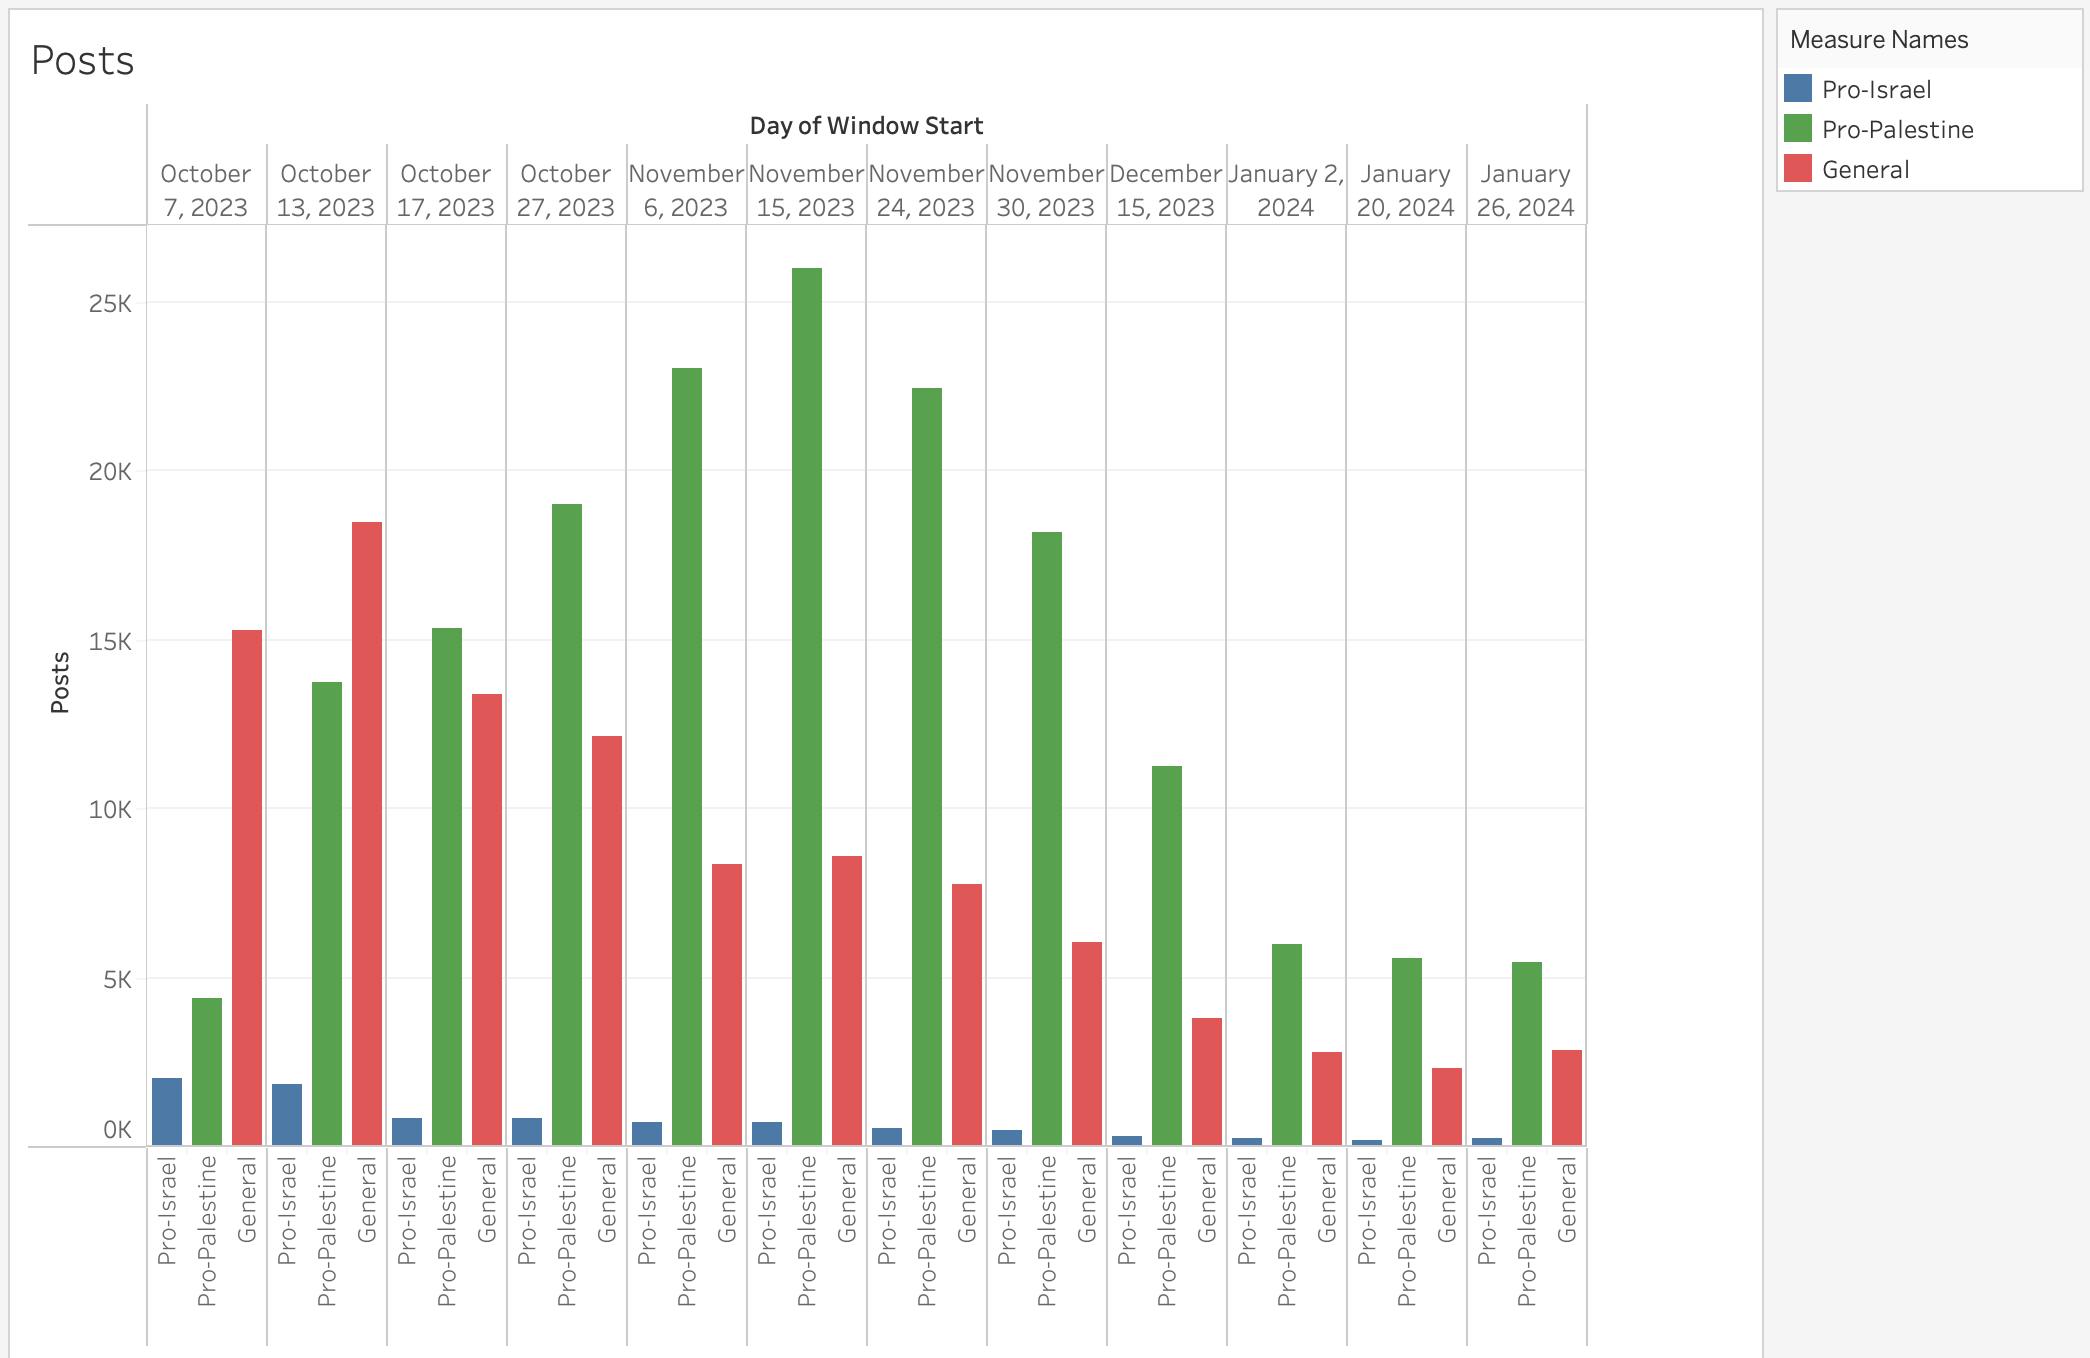 Total Posts Per Week (Pro-Israel, Pro-Palestine, Genera)